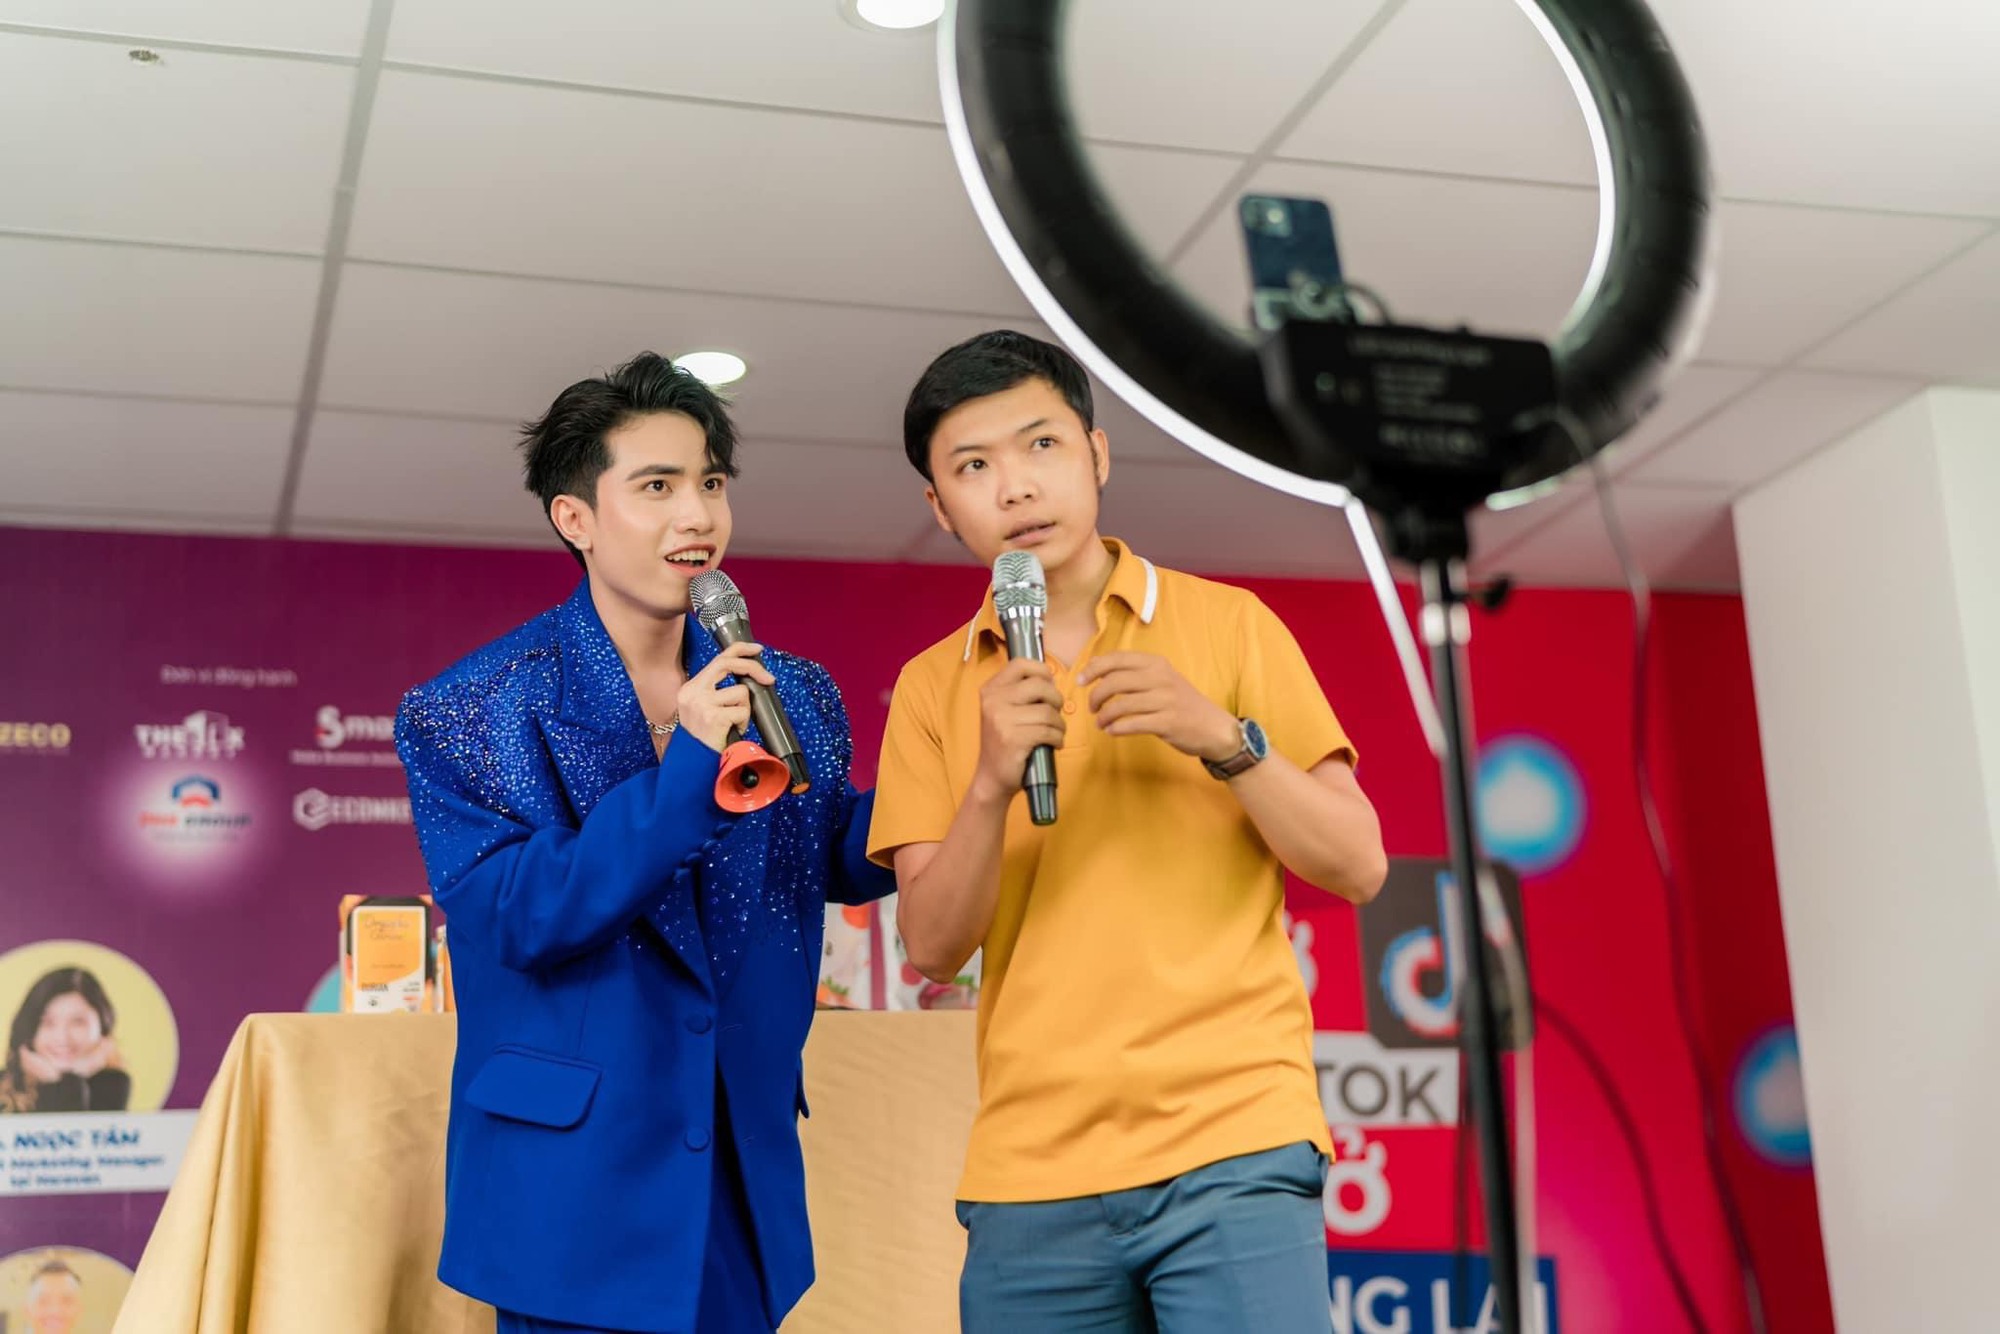 MC KOC Hoàng Việt làm giảng viên livestream, giới trẻ háo hức vì những bí thuật quá đỉnh - Ảnh 1.